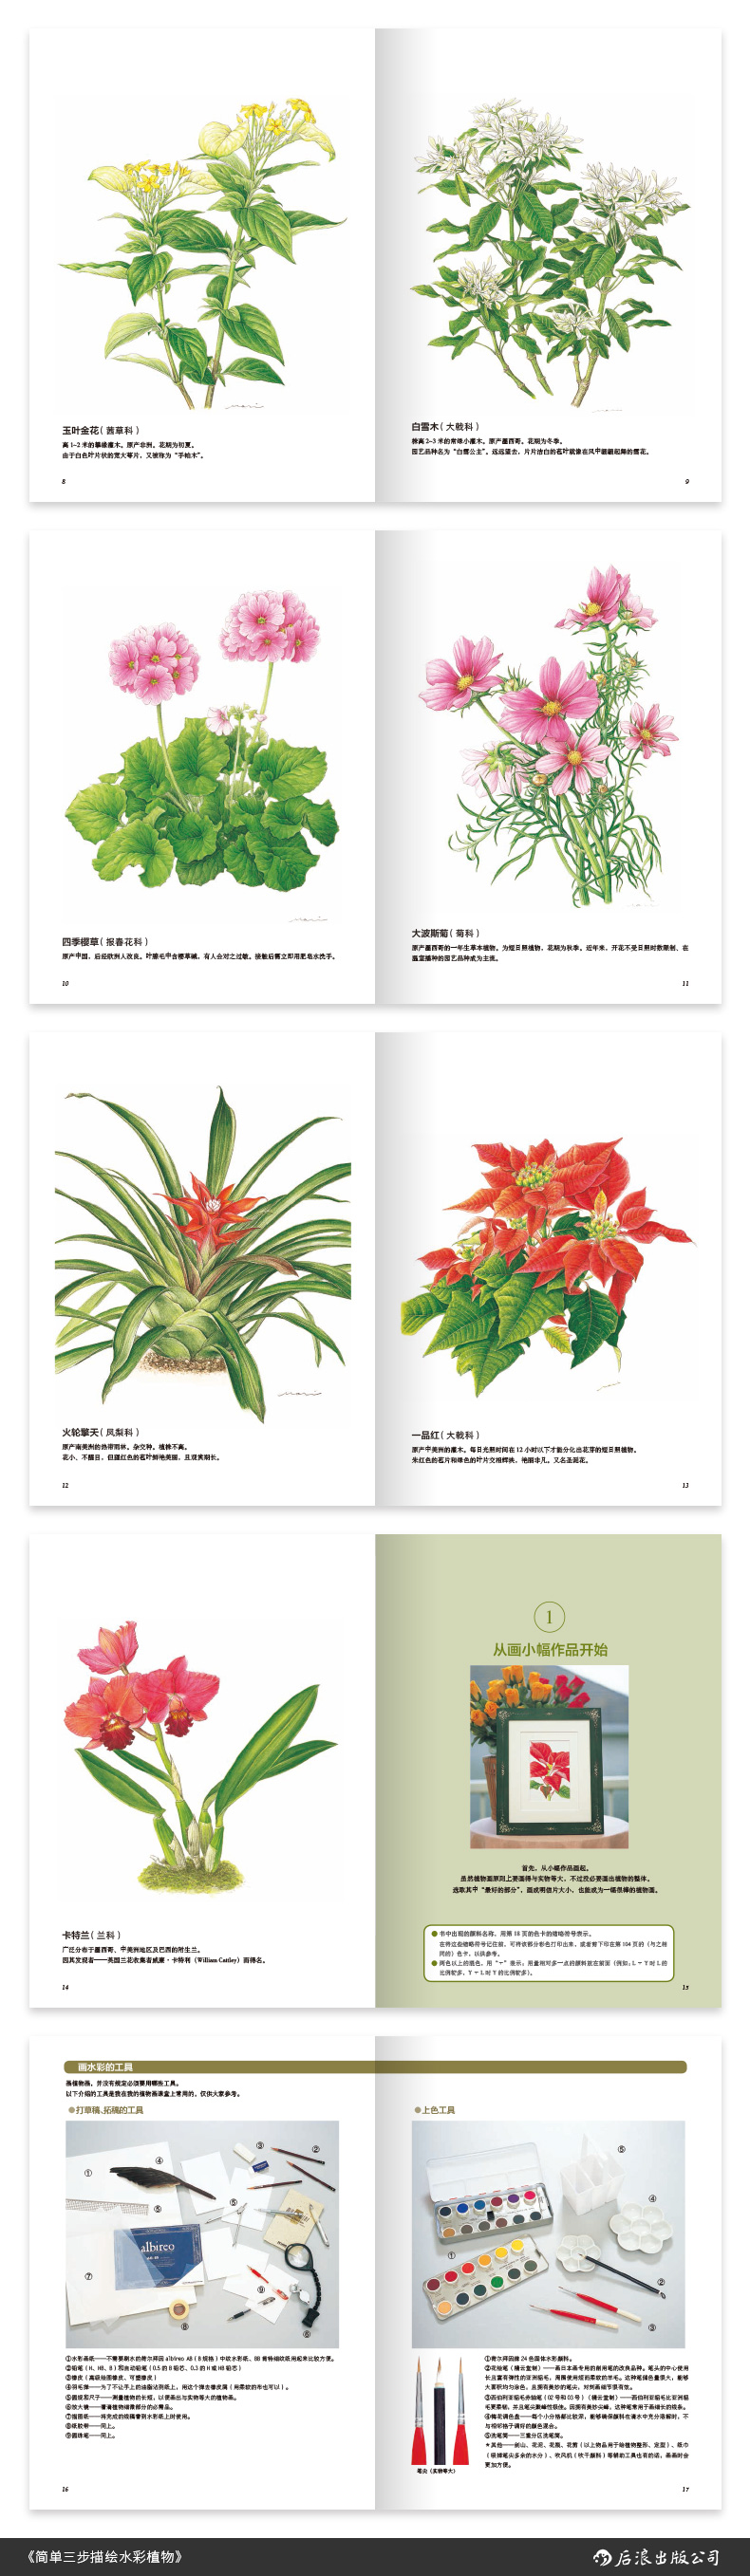 简单三步描绘水彩植物 外形各异的花卉都能简单三步轻松上手给颜色编码 零基础也能画出美丽色彩 后浪出版公司